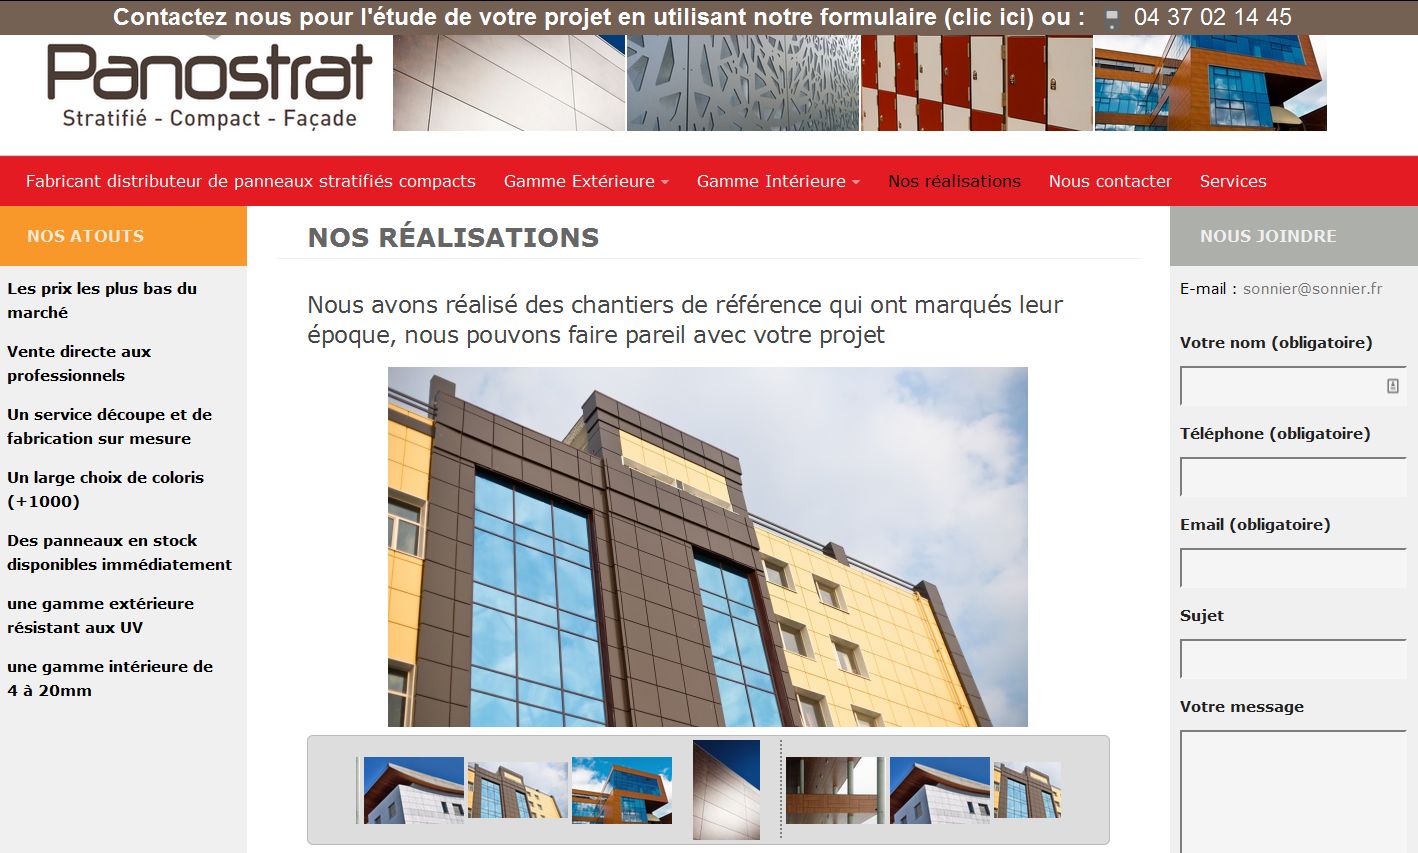 Panostrat, site relié à l'entreprise SONNIER Bois - Projet réalisé par l'agence Web & Digital ARTWYS (Valence)